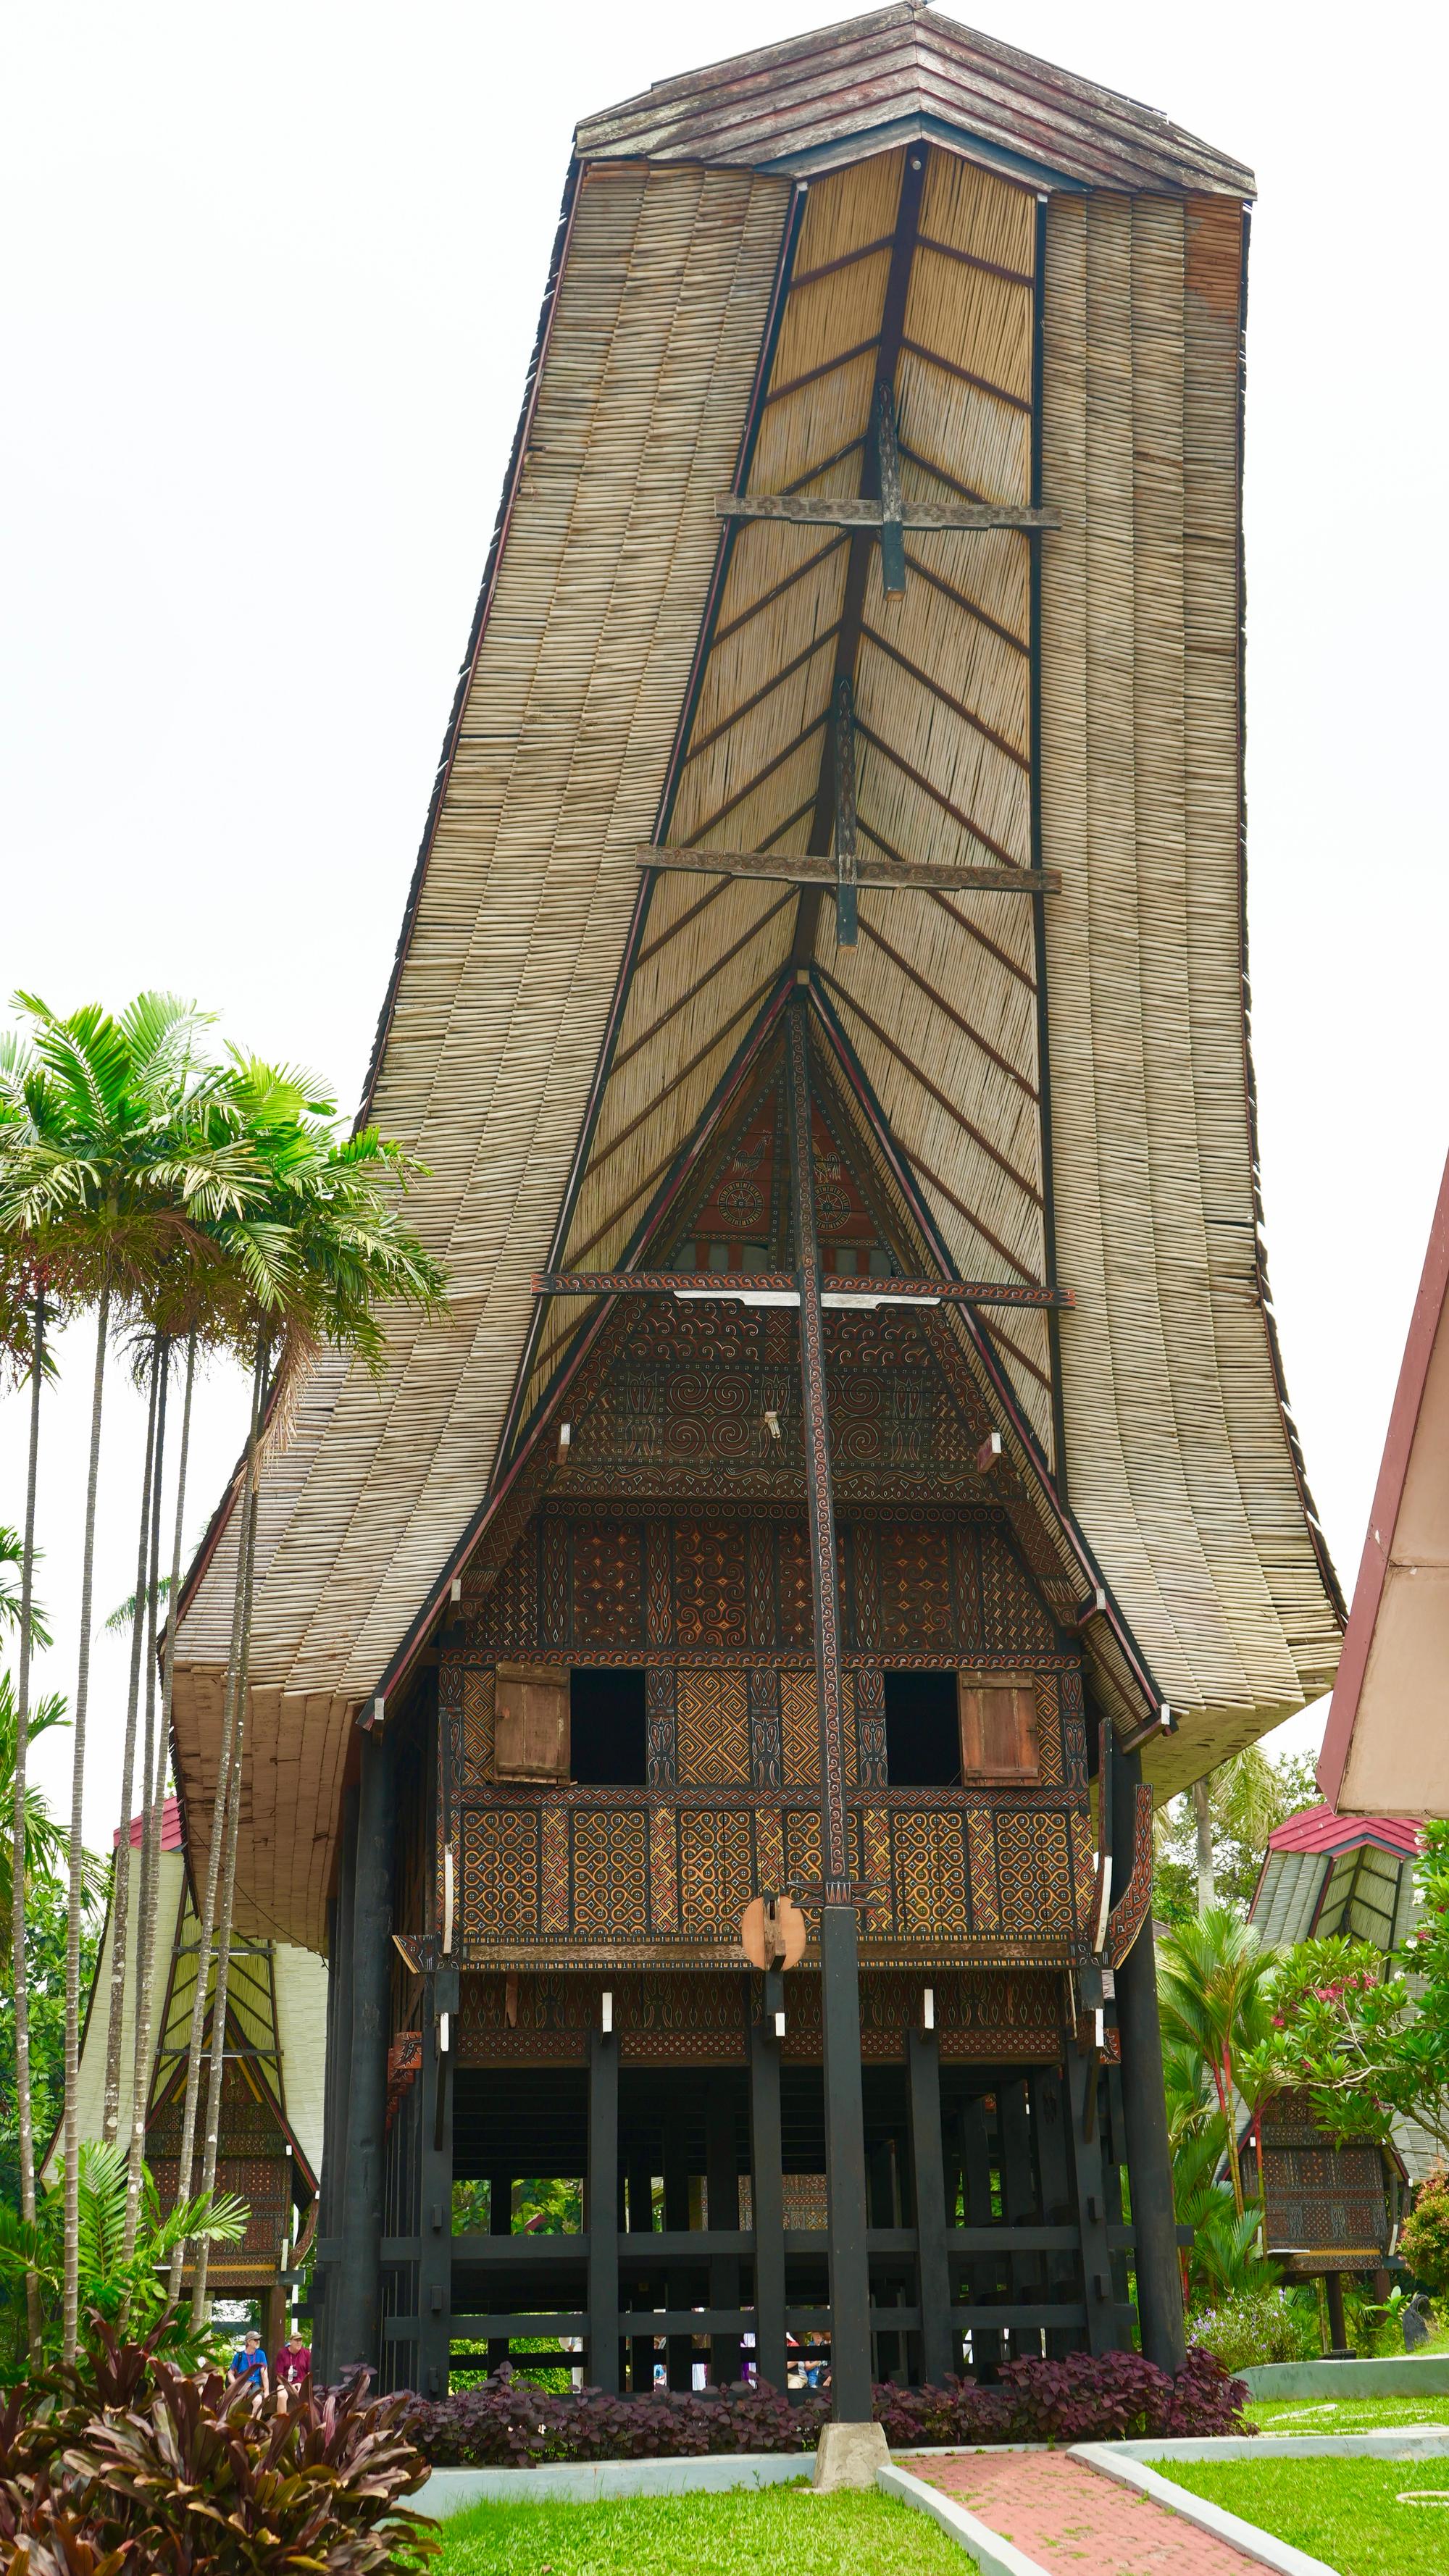 Sulawesi-style house